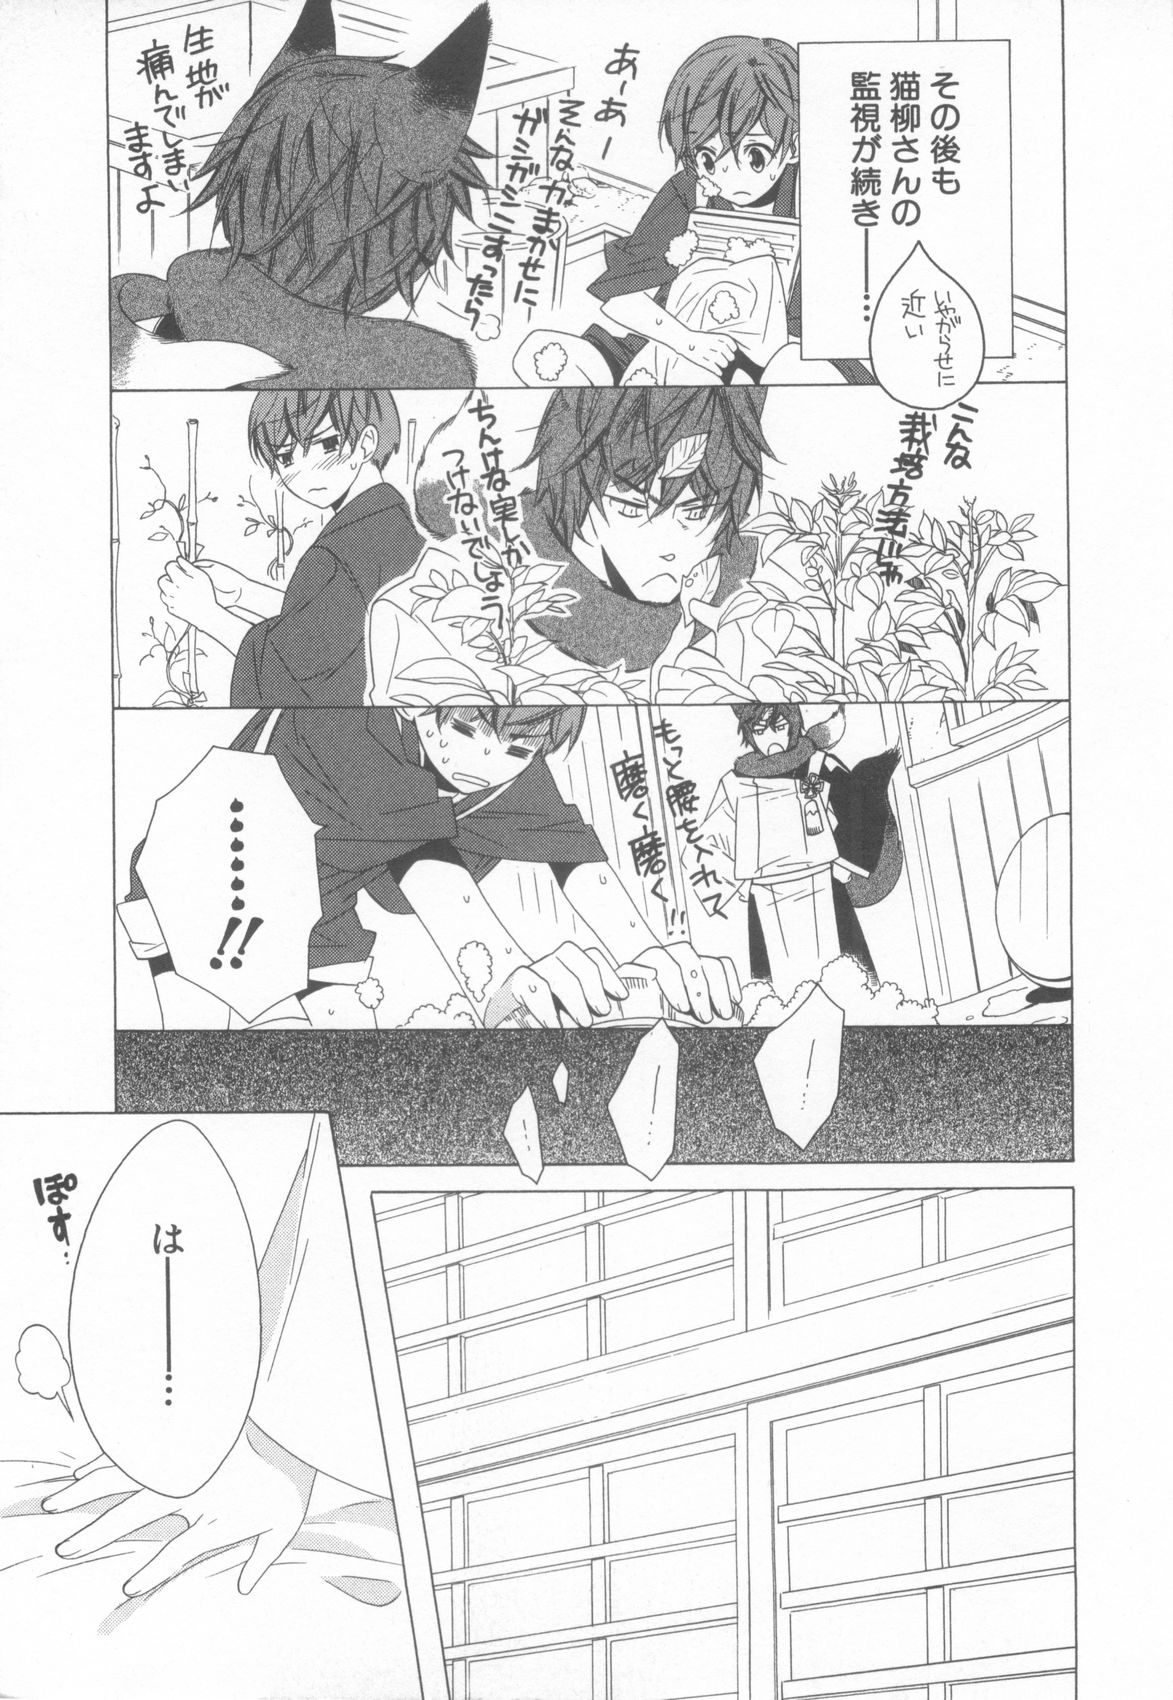 [Anthology] Shota Tama Vol. 3 page 41 full